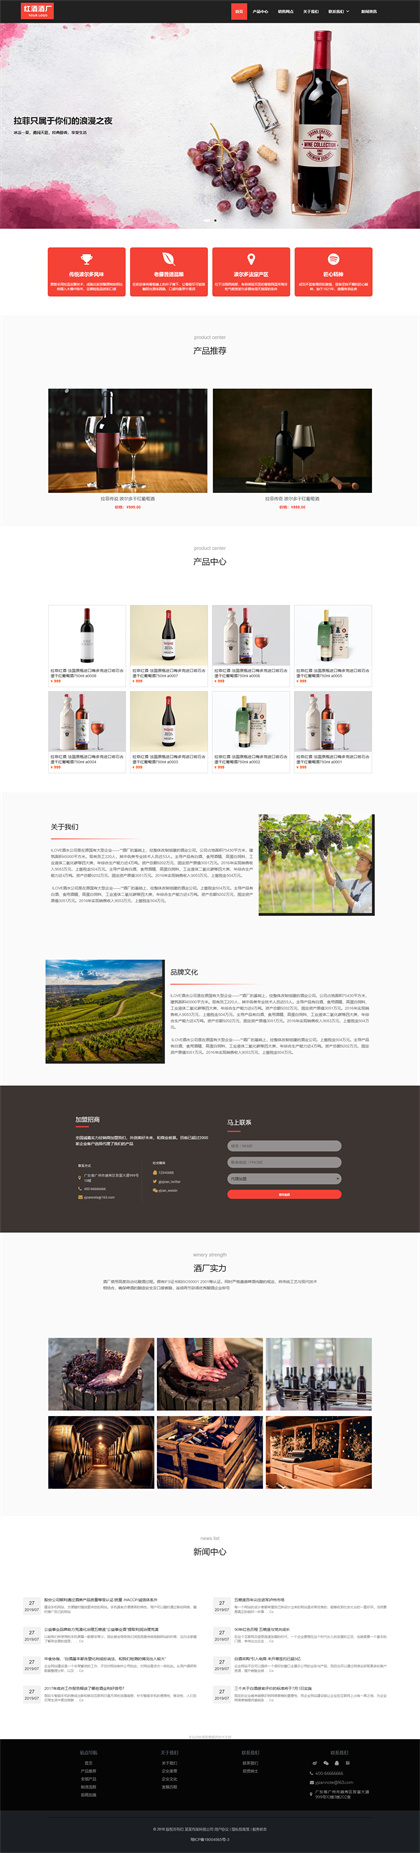 红酒酒厂-进口酒水公司-红酒庄园-酒水厂-酒水饮料公司网站模板网站模板预览图片